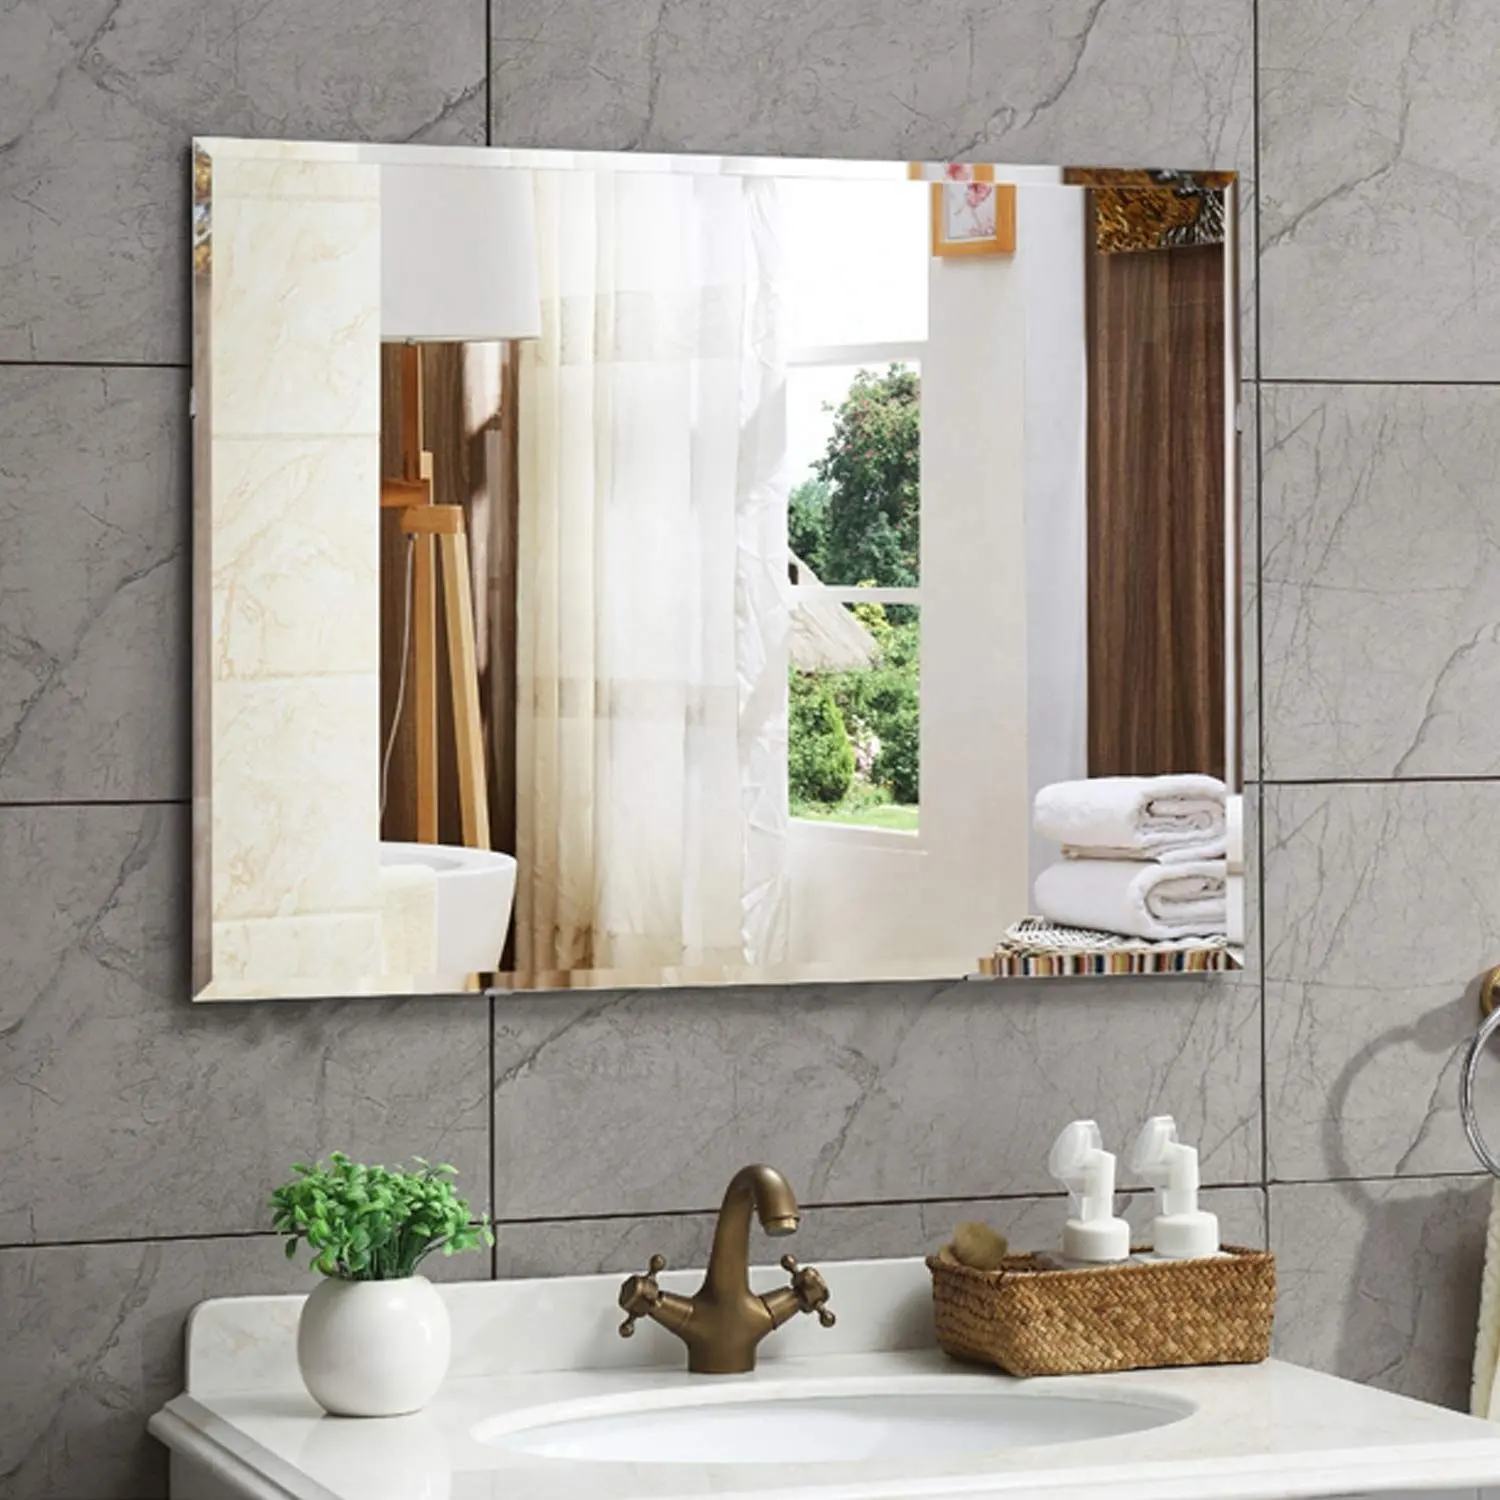 4mm bordo smussato decorazione per la casa verticale orizzontale a parete di lusso vanità specchio bagno decorativo con grucce